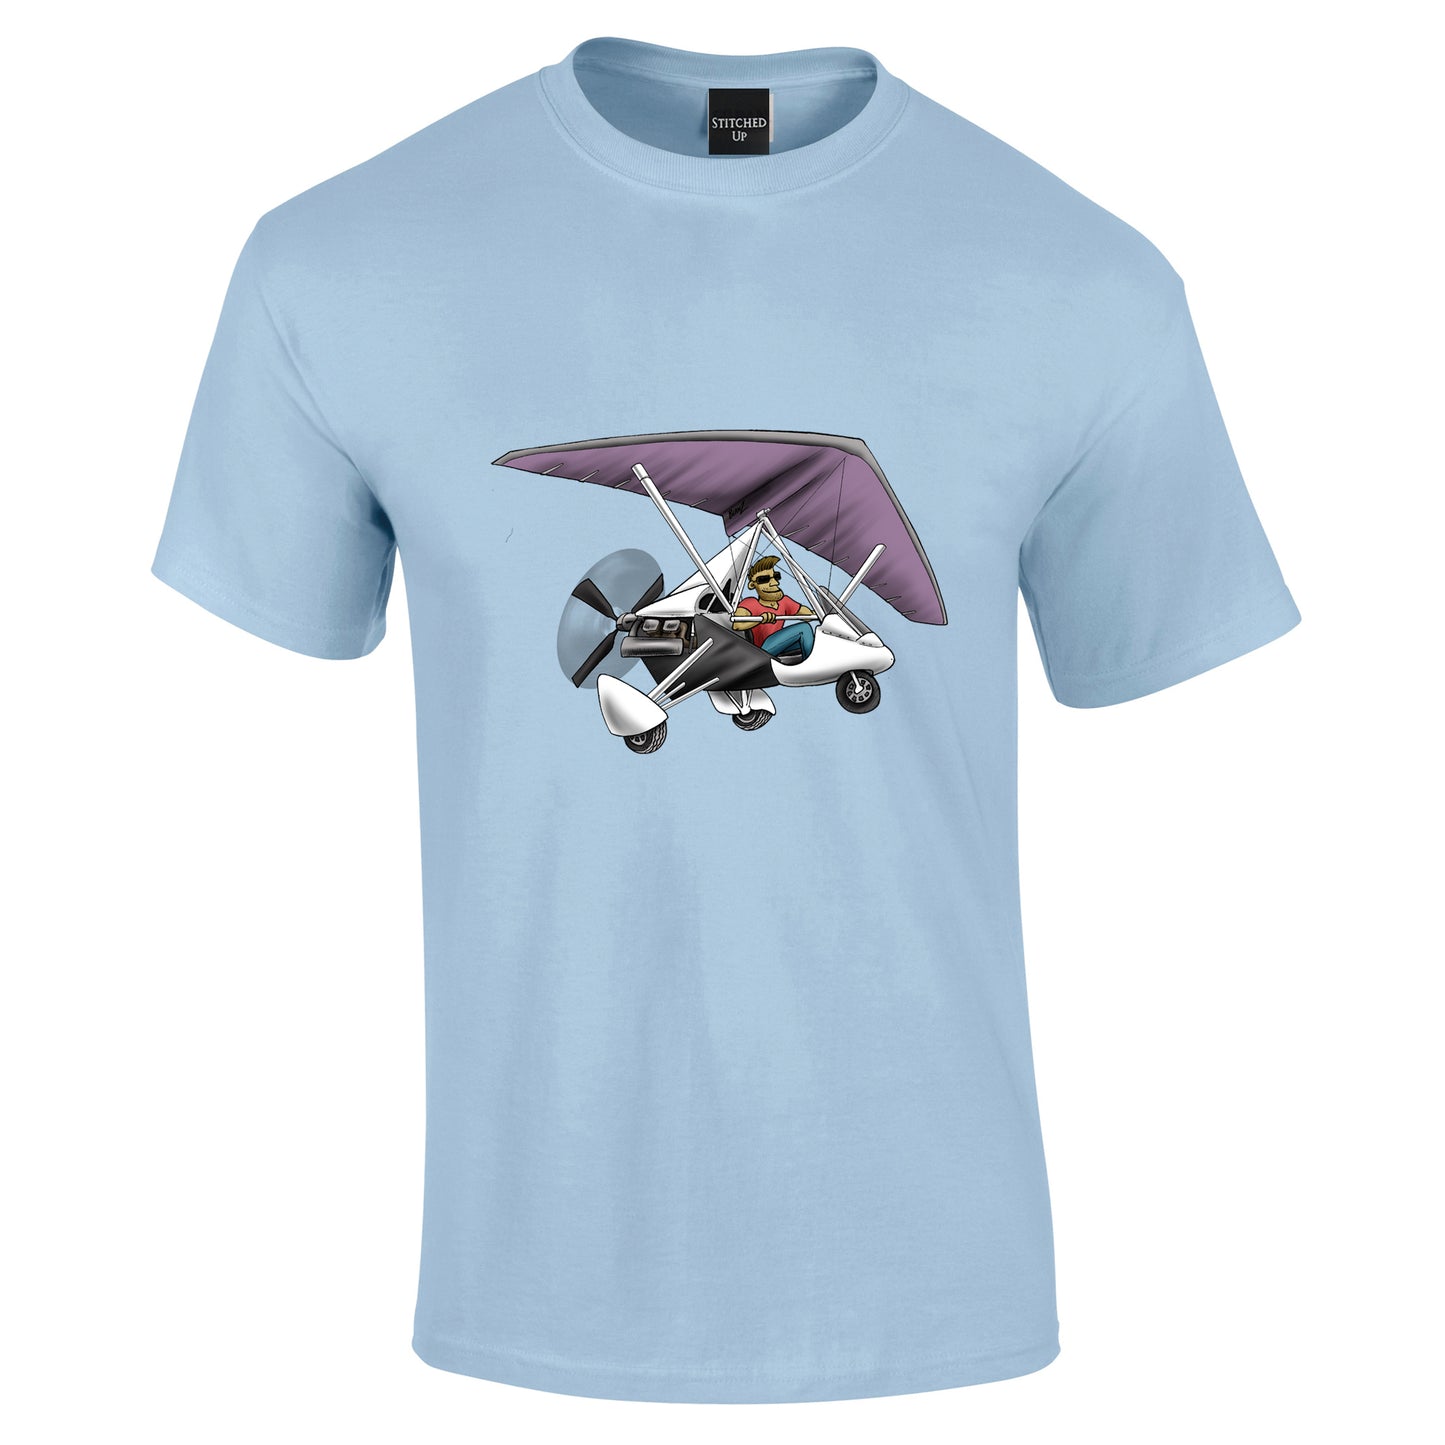 Flexwing Microlight T-Shirt